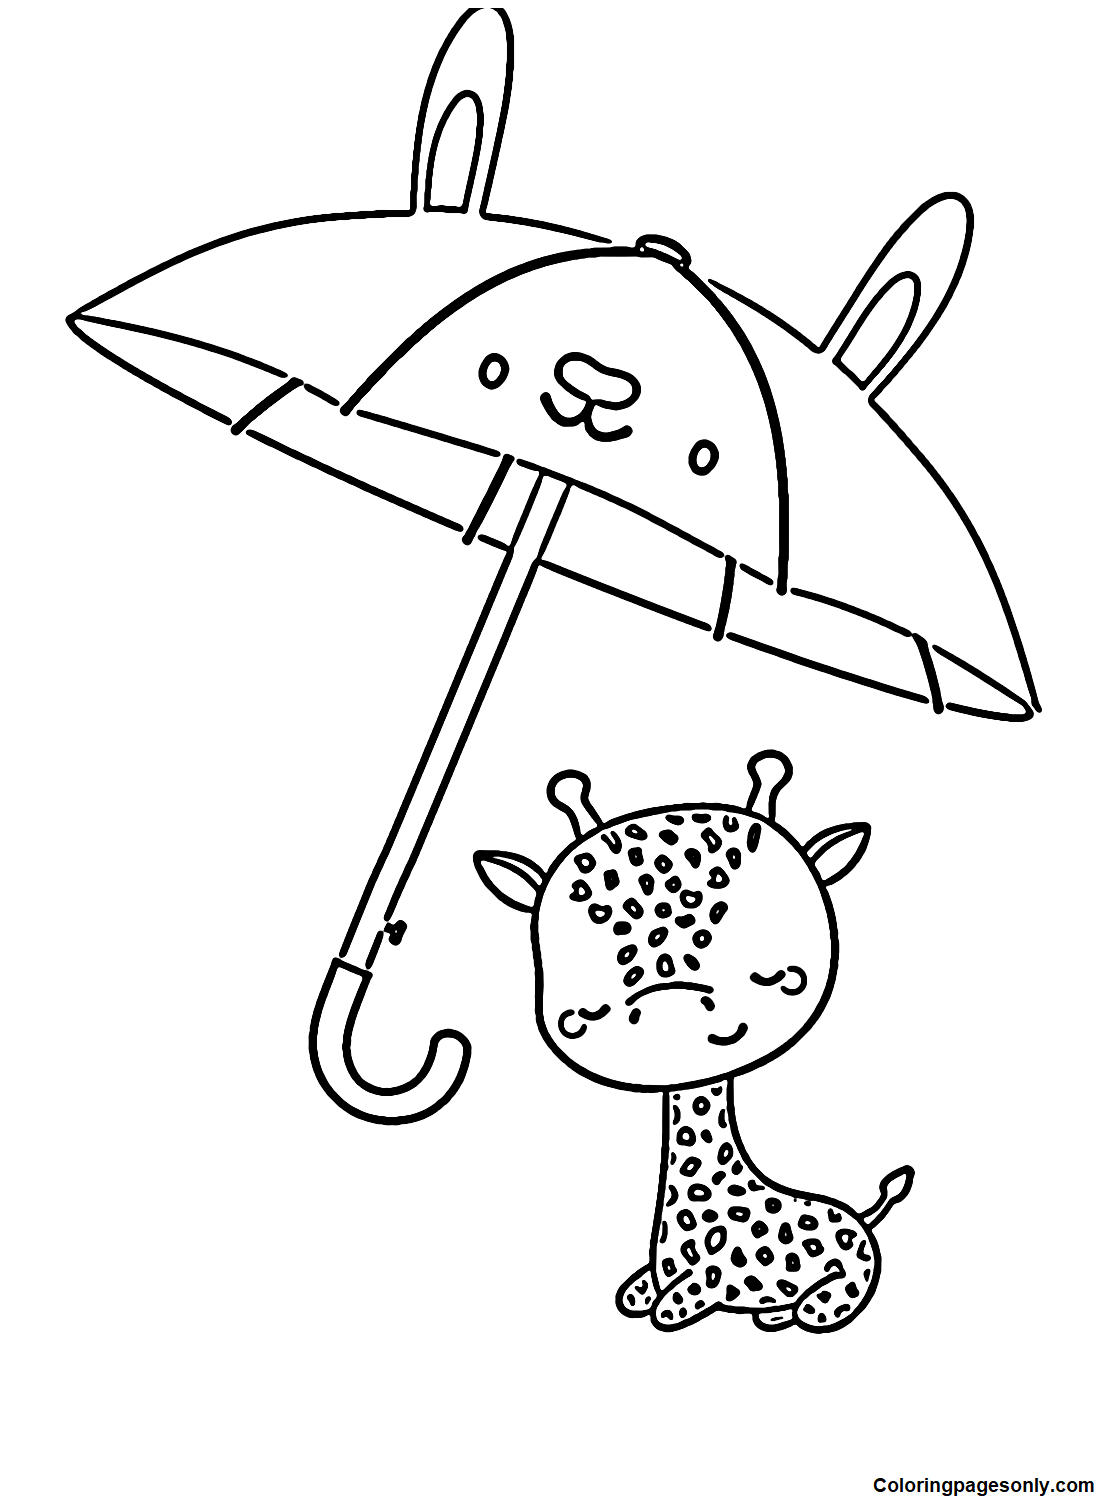 المظلة والزرافة من المظلة